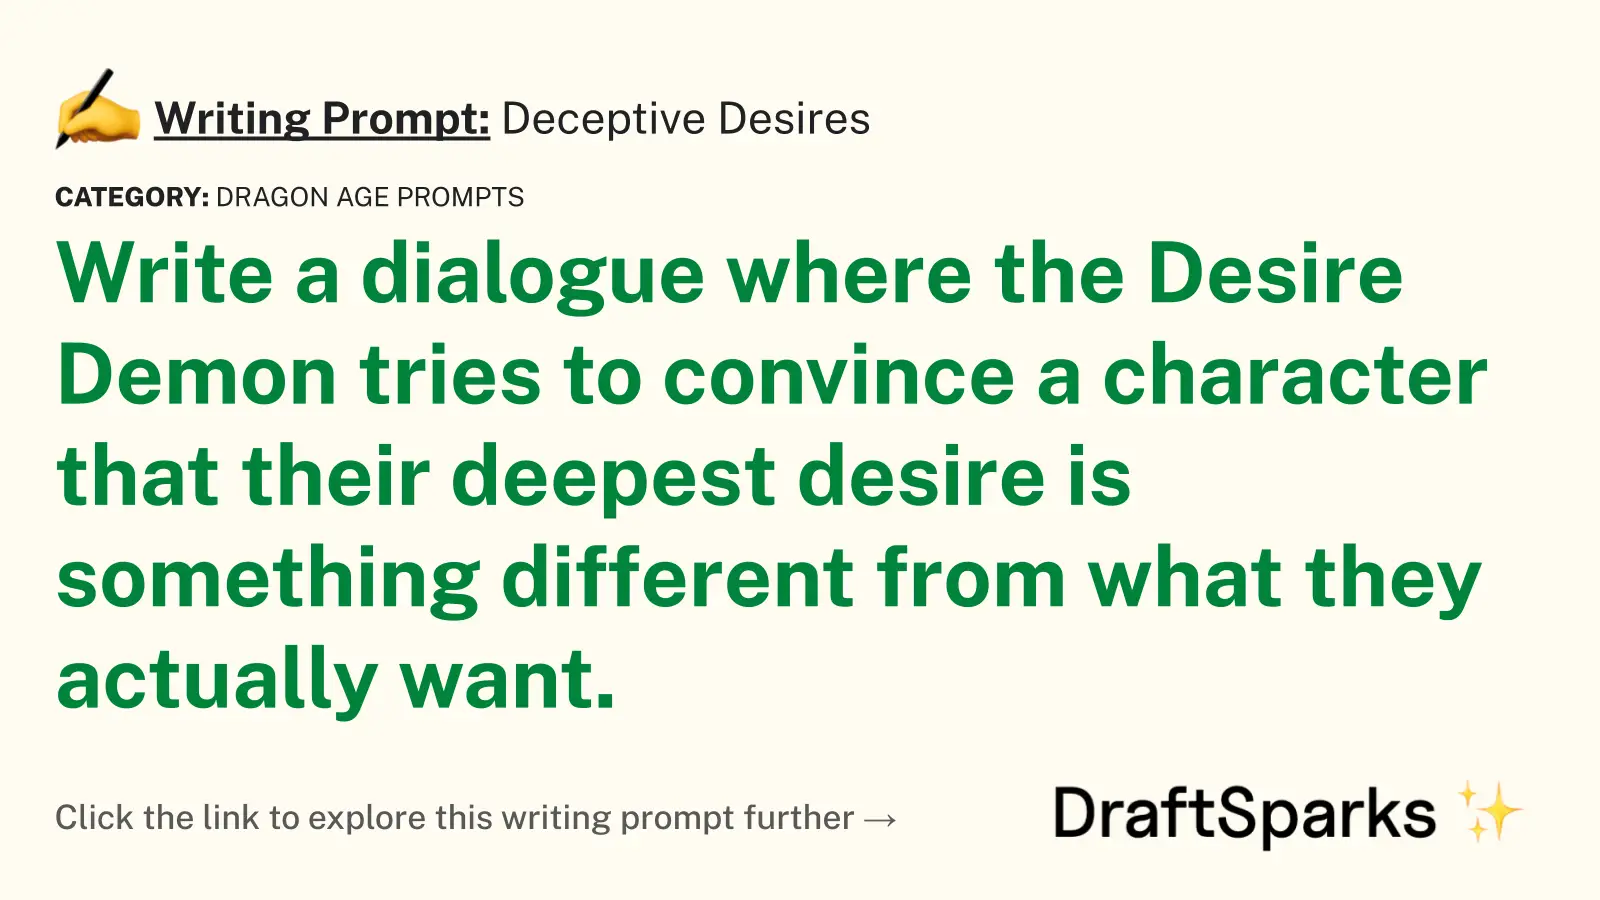 Deceptive Desires